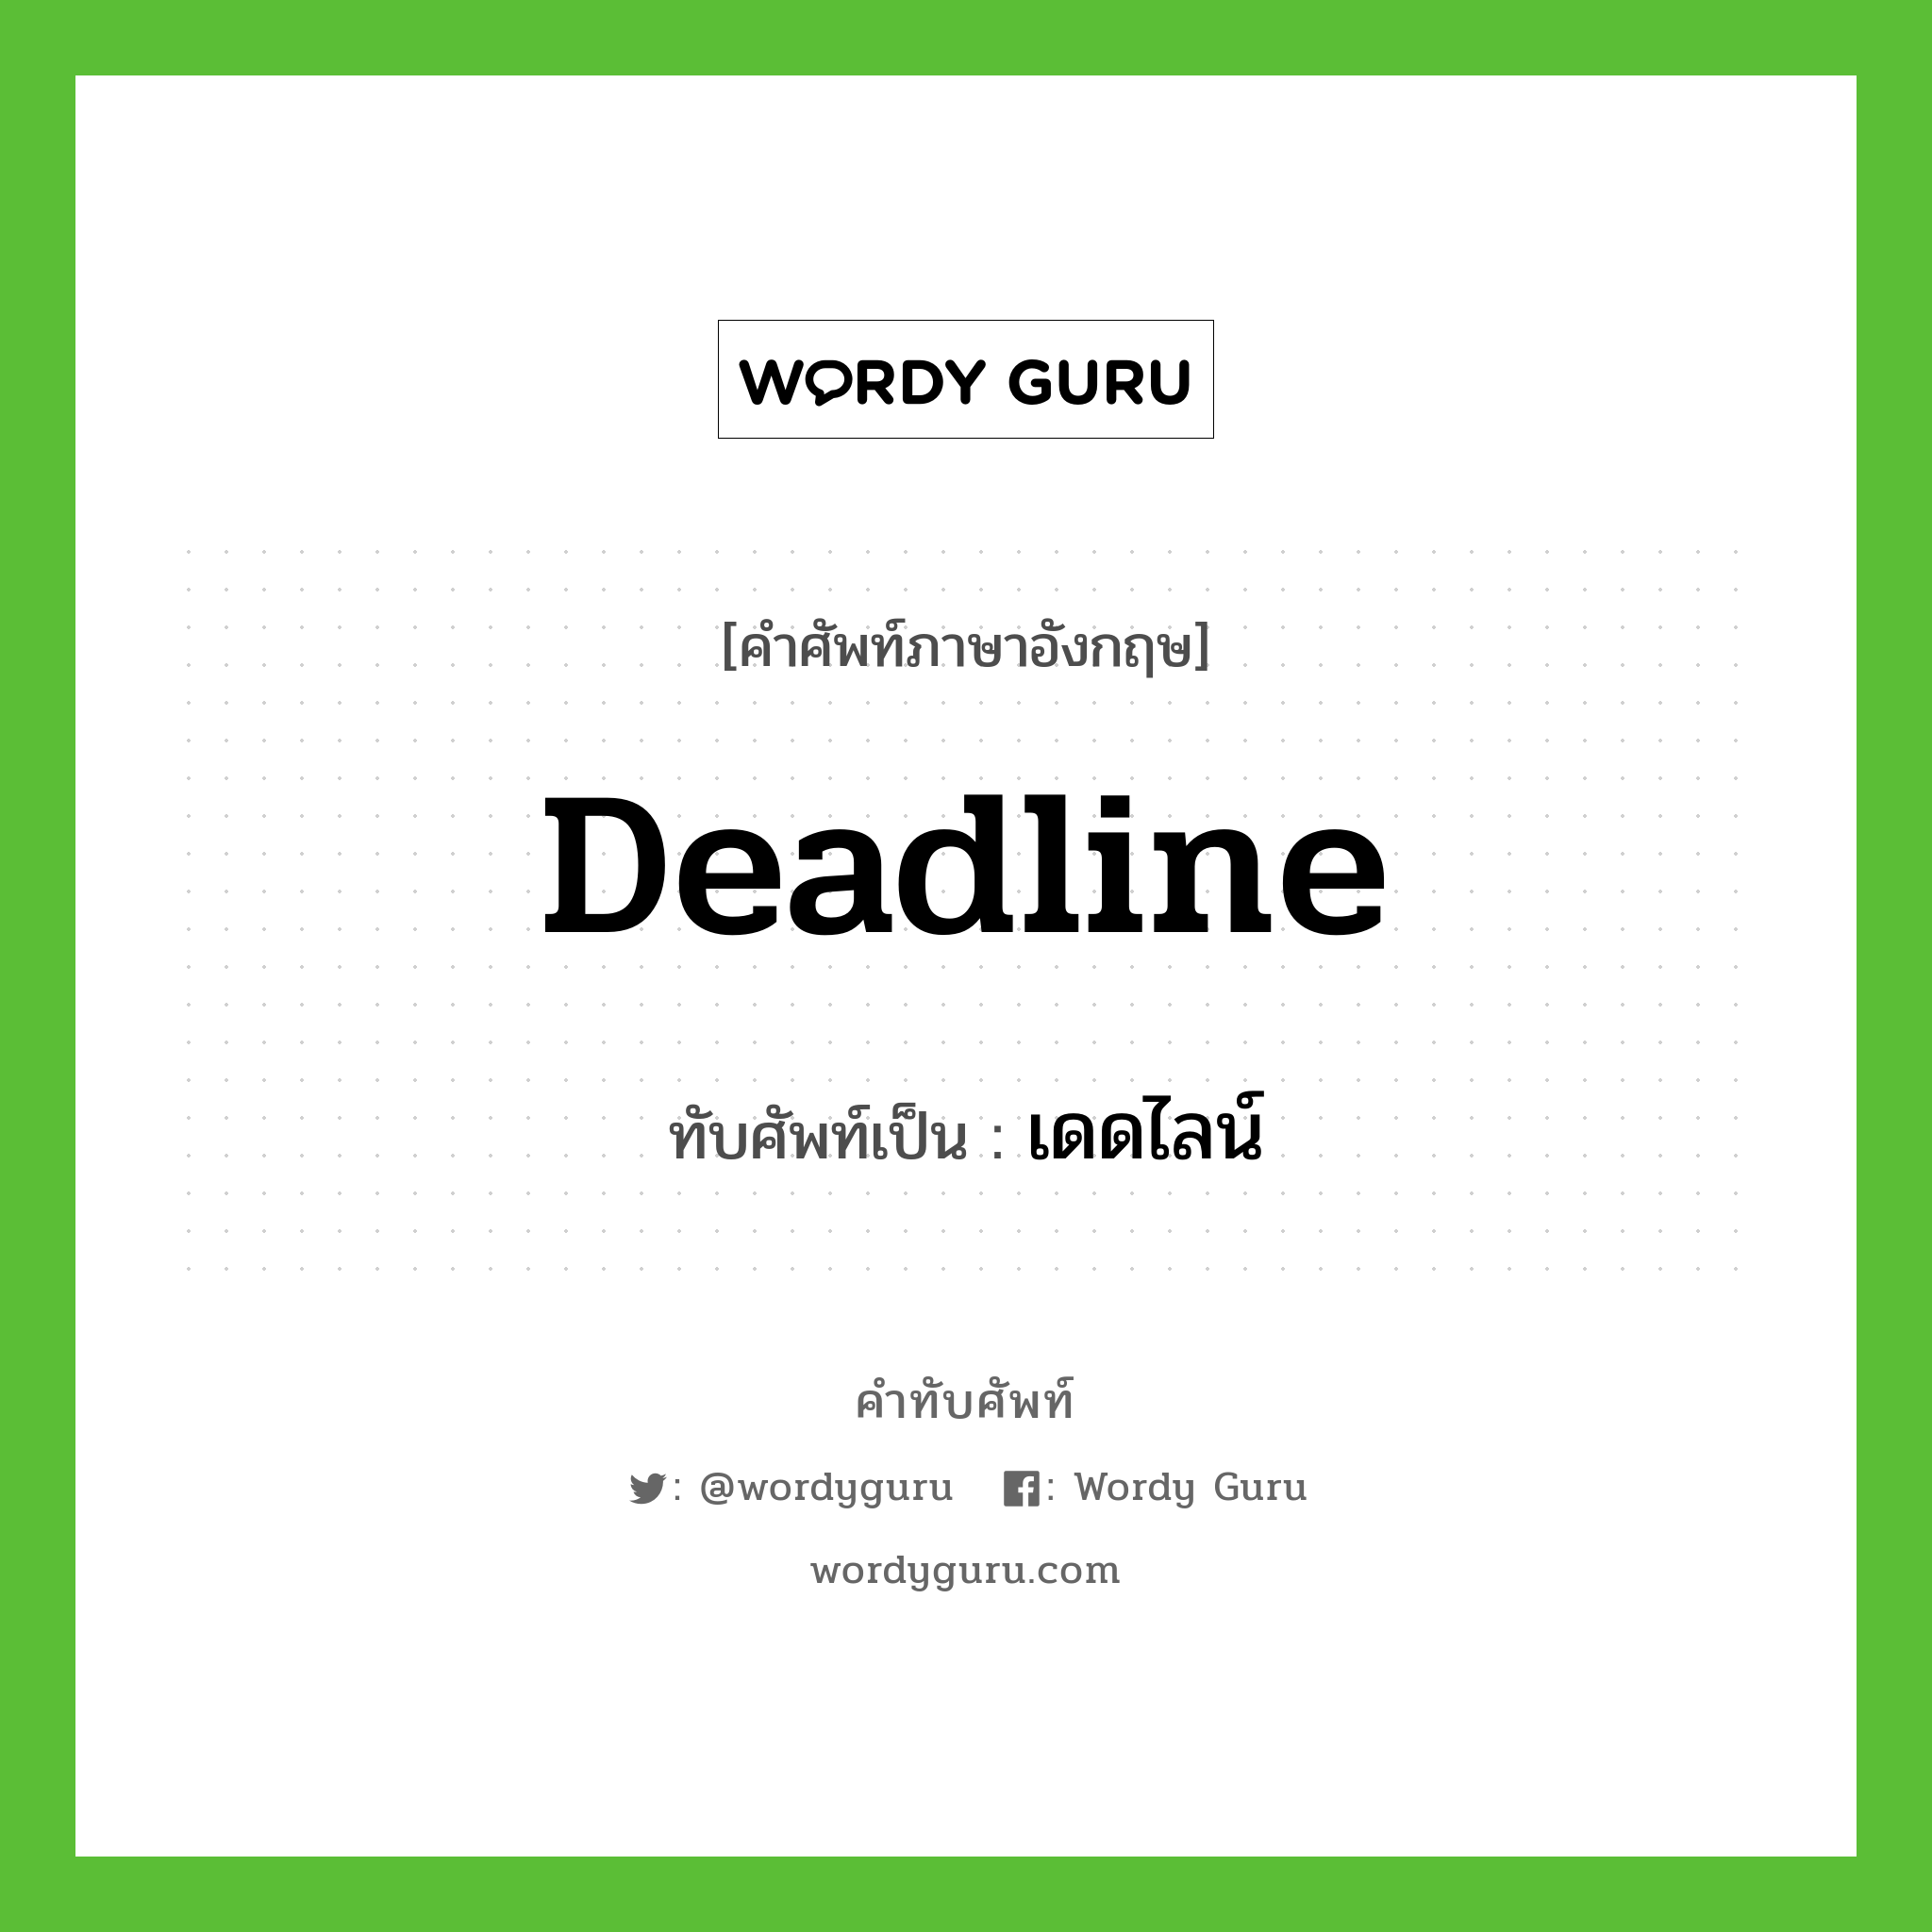 deadline เขียนเป็นคำไทยว่าอะไร?, คำศัพท์ภาษาอังกฤษ deadline ทับศัพท์เป็น เดดไลน์